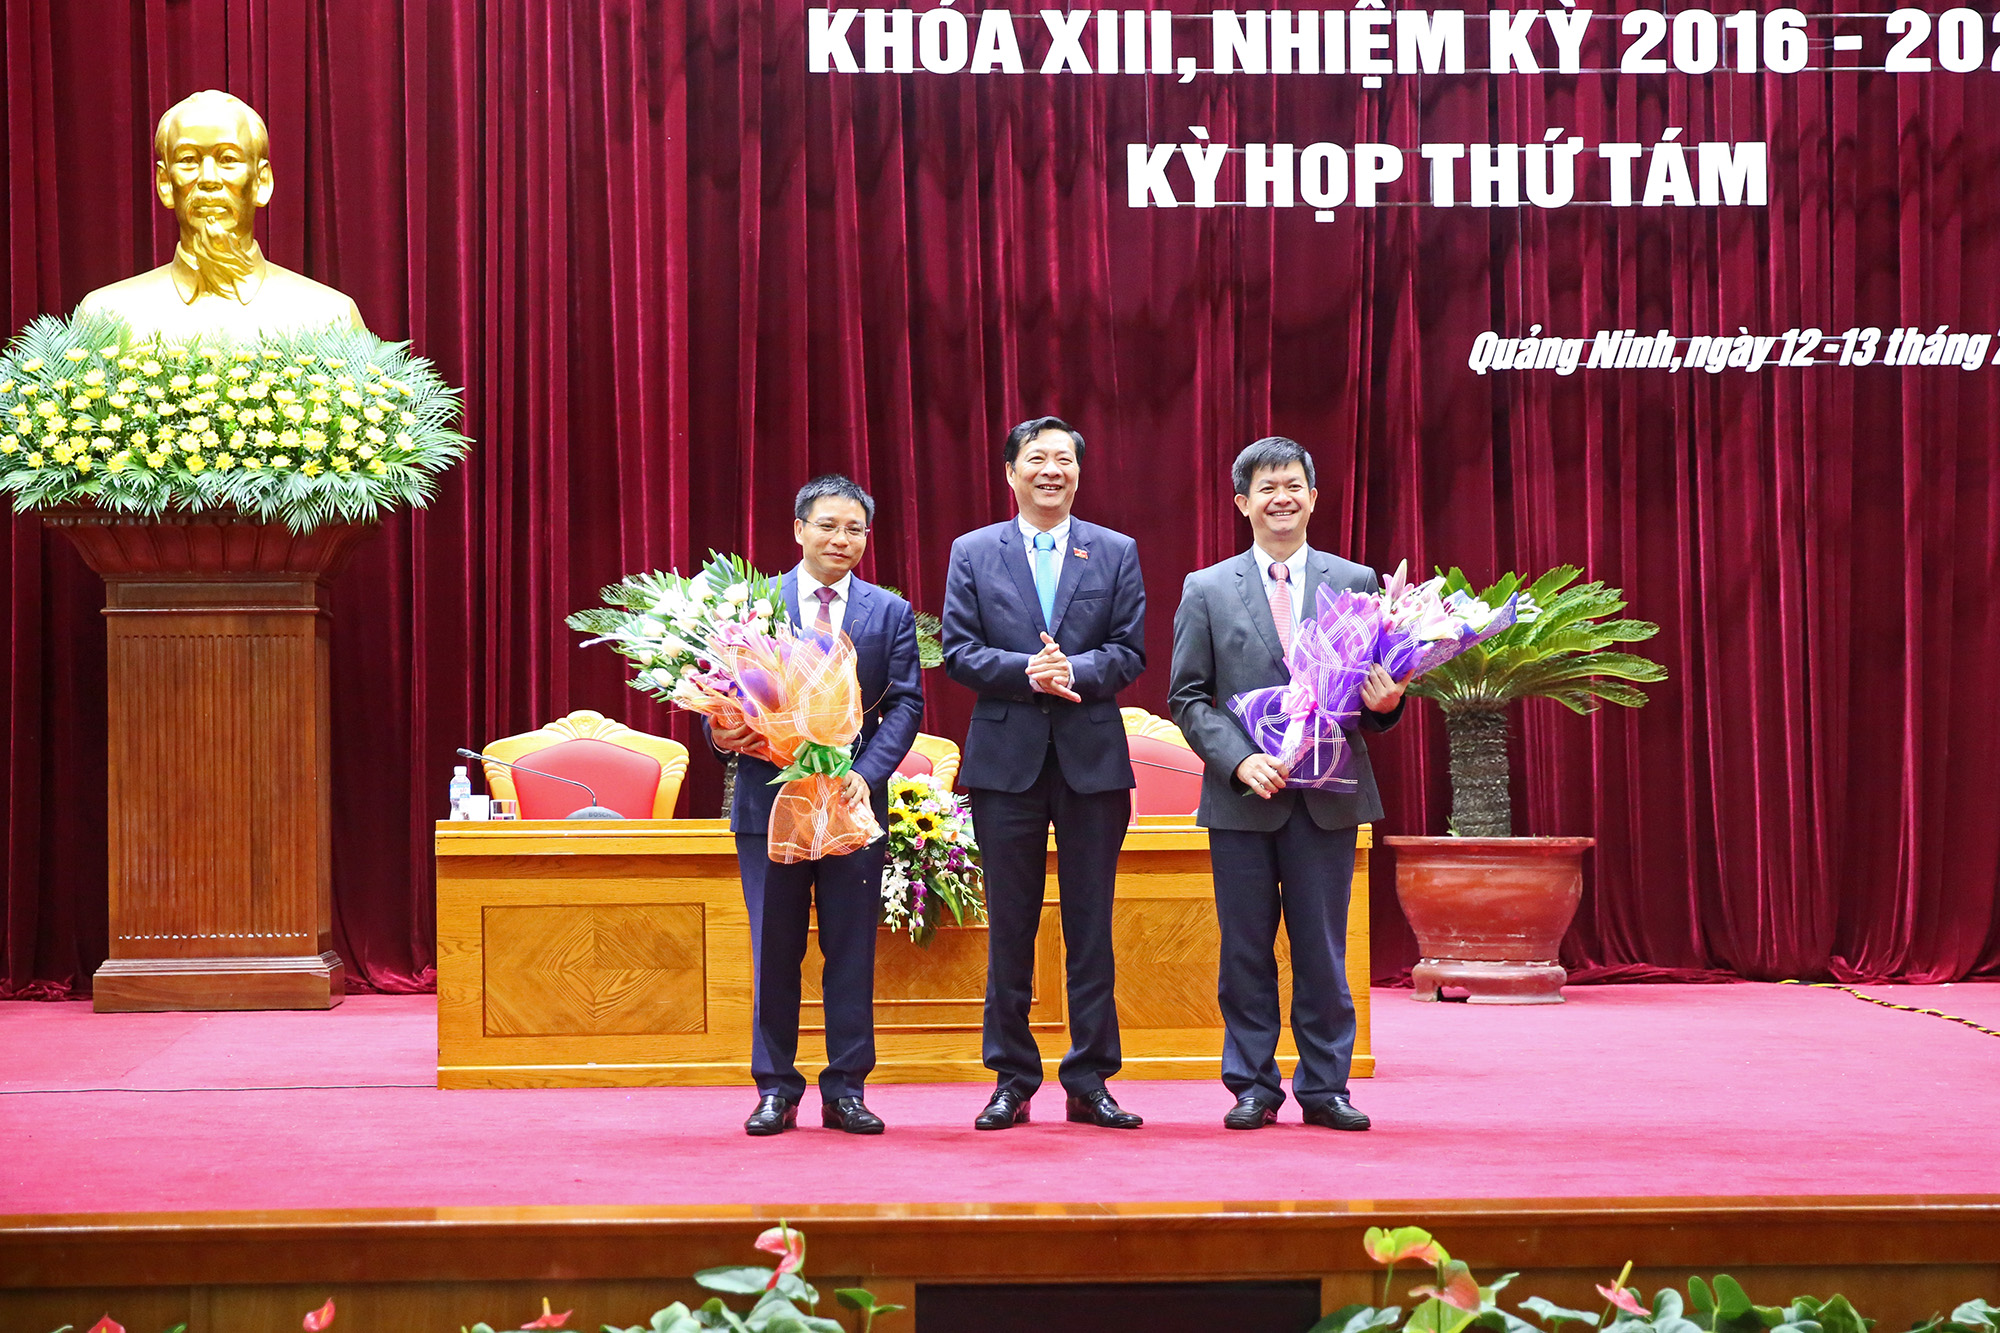 Đồng chí Nguyễn Văn Đọc, Bí thư Tỉnh ủy, Chủ tịch HĐND tỉnh, tặng hoa chúc mừng hai đồng chí Lê Quang Tùng và Nguyễn Văn Thắng.